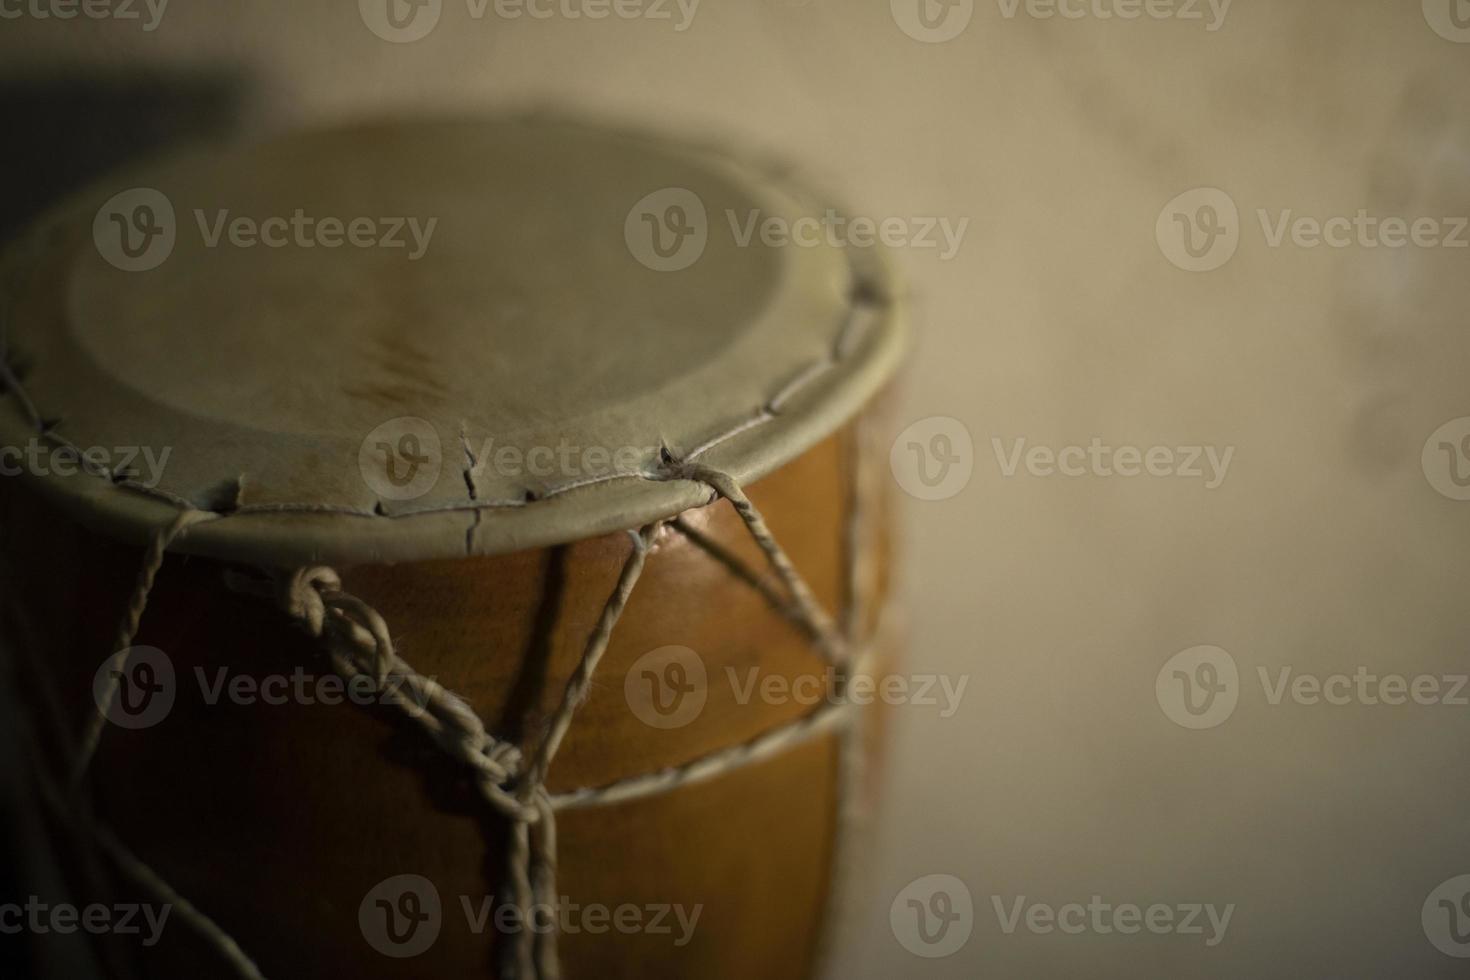 afrikansk trumma. akustisk instrument. chock intrång på Hem. brun träd. foto